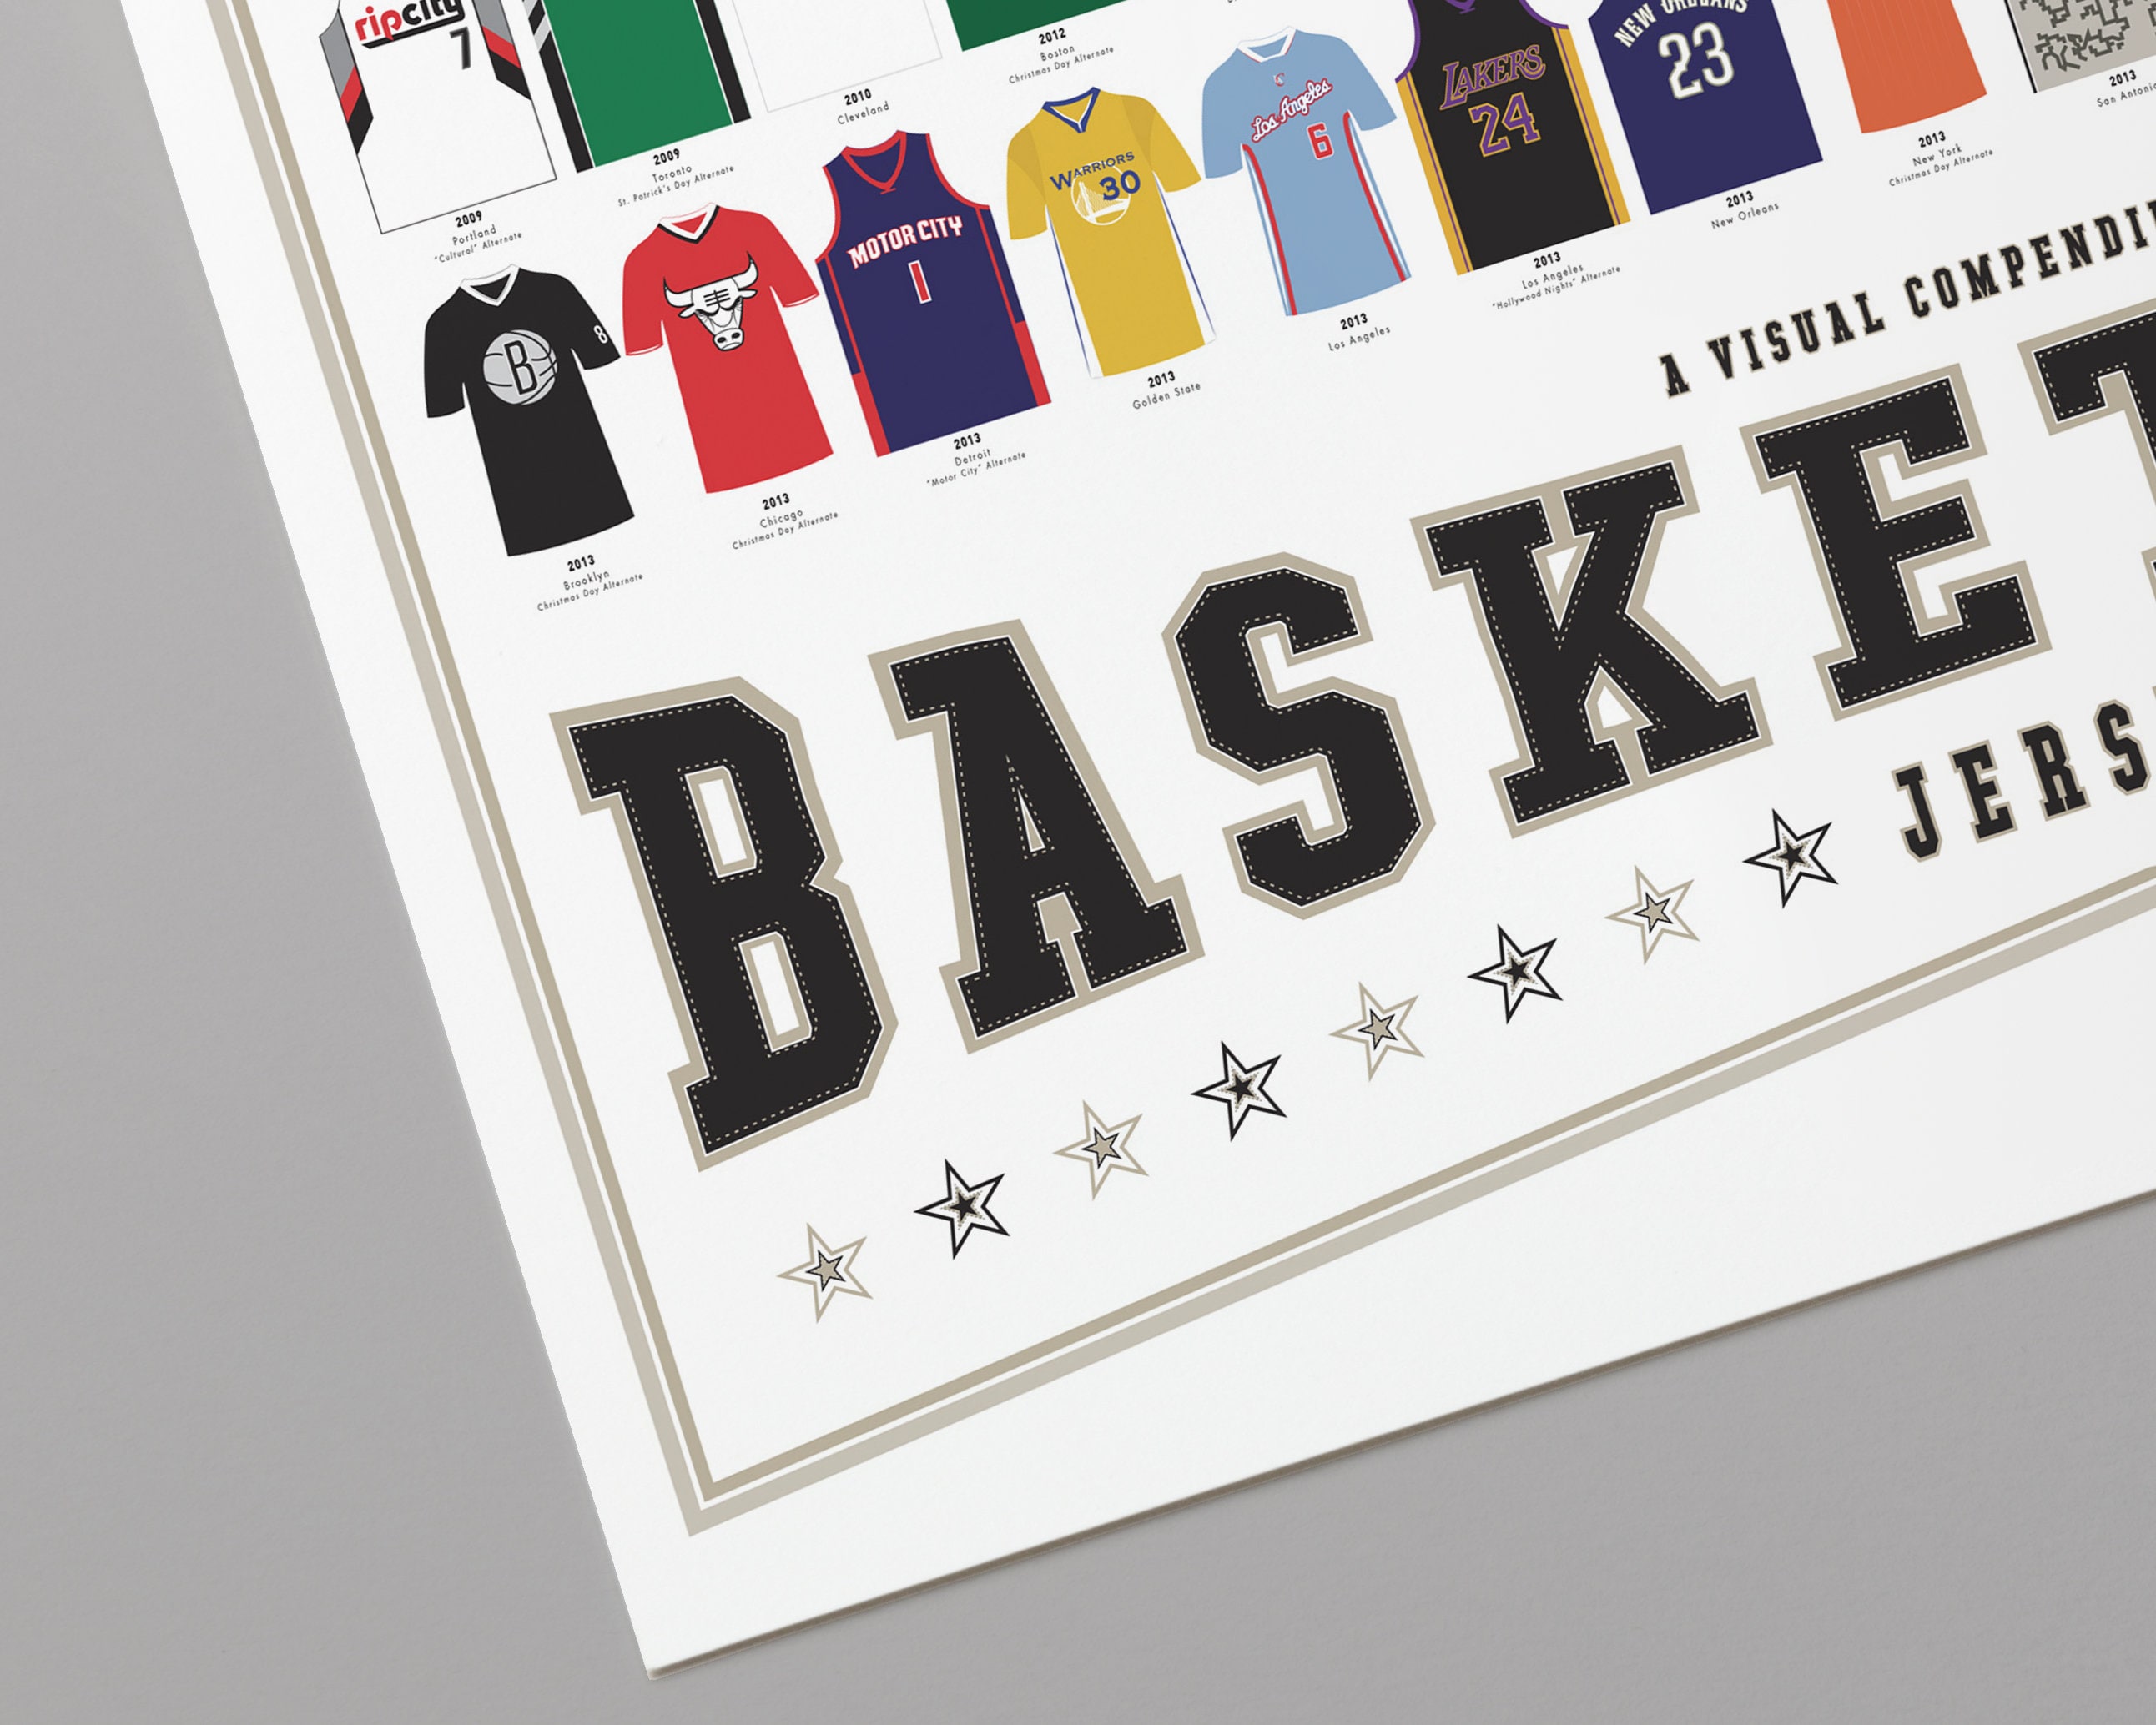 A Visual Compendium of Basketball Jerseys – Pop Chart